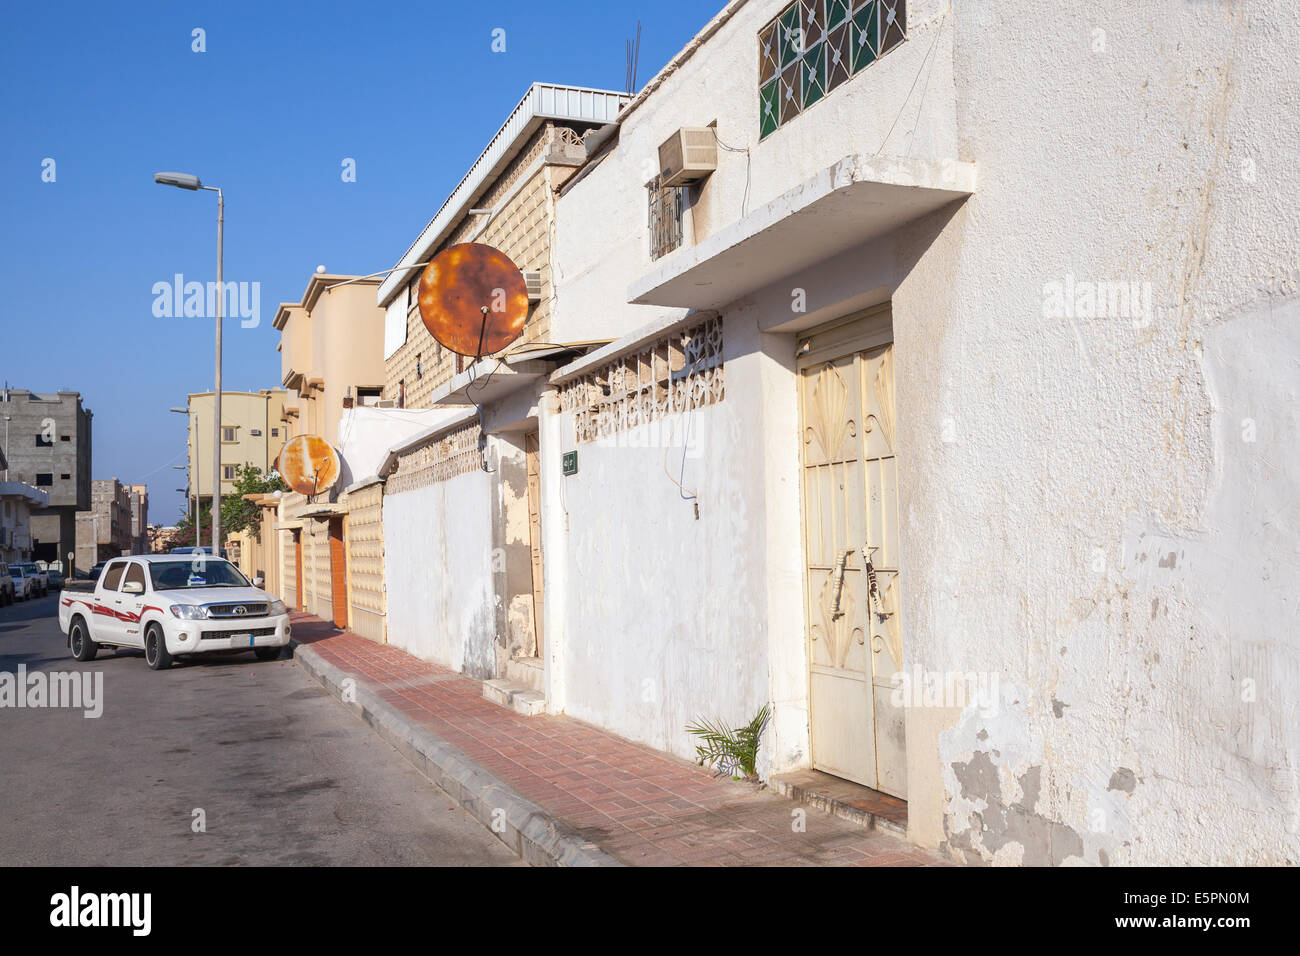 RAHIMA, Arabia Saudita - 19 maggio 2014 ordinario street view con auto parcheggiata e pareti bianche, Arabia Saudita Foto Stock